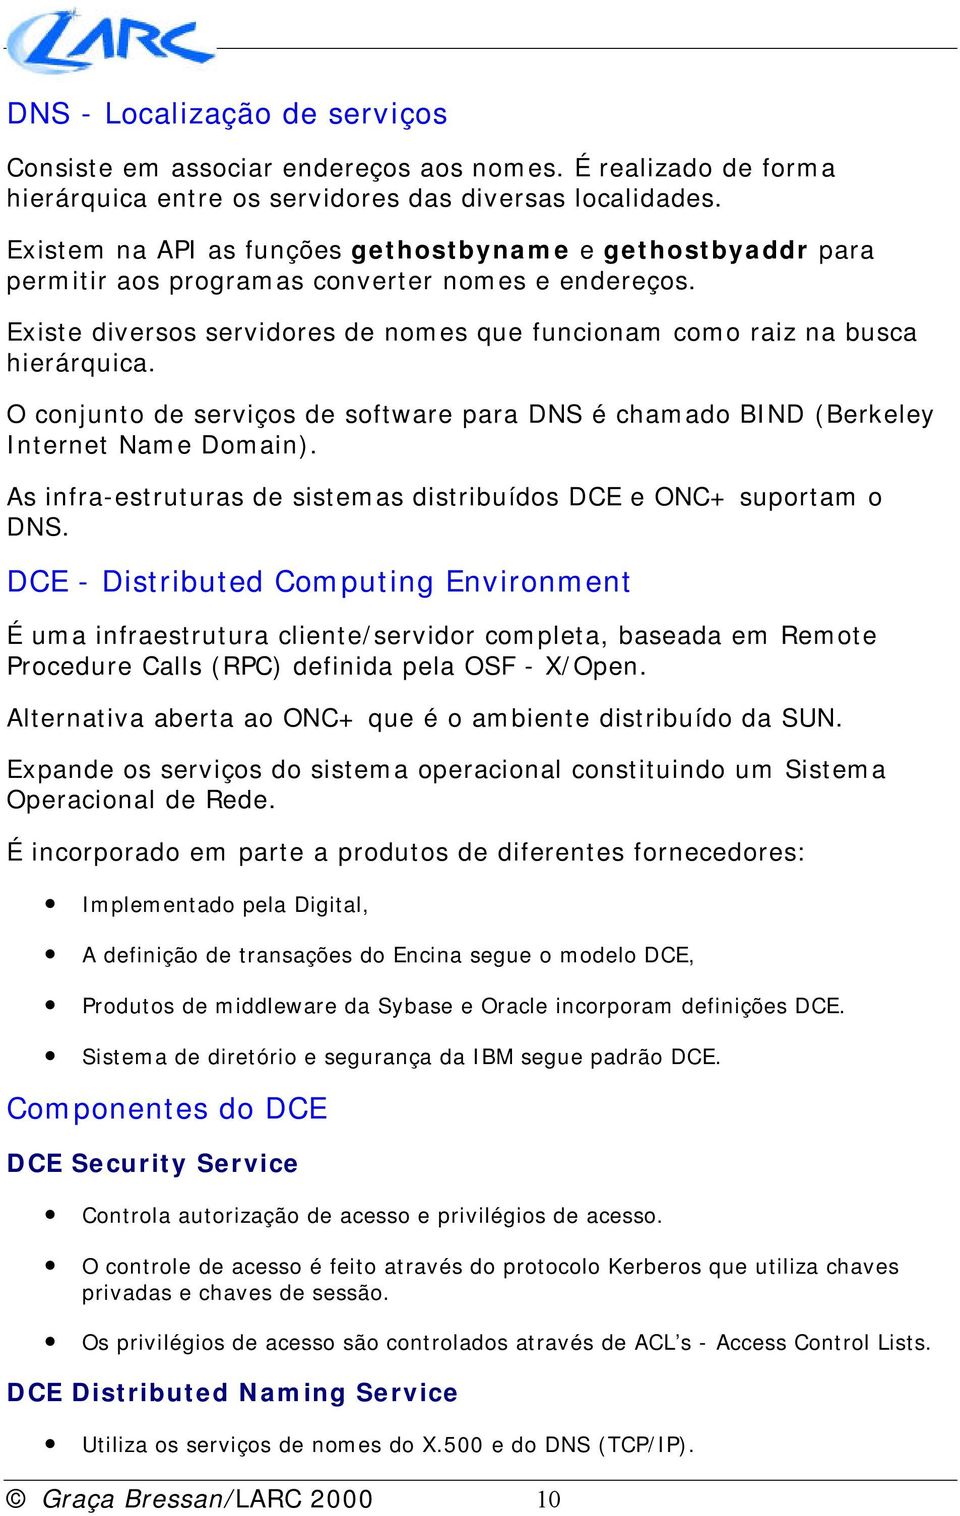 O conjunto de serviços de software para DNS é chamado BIND (Berkeley Internet Name Domain). As infra-estruturas de sistemas distribuídos DCE e ONC+ suportam o DNS.